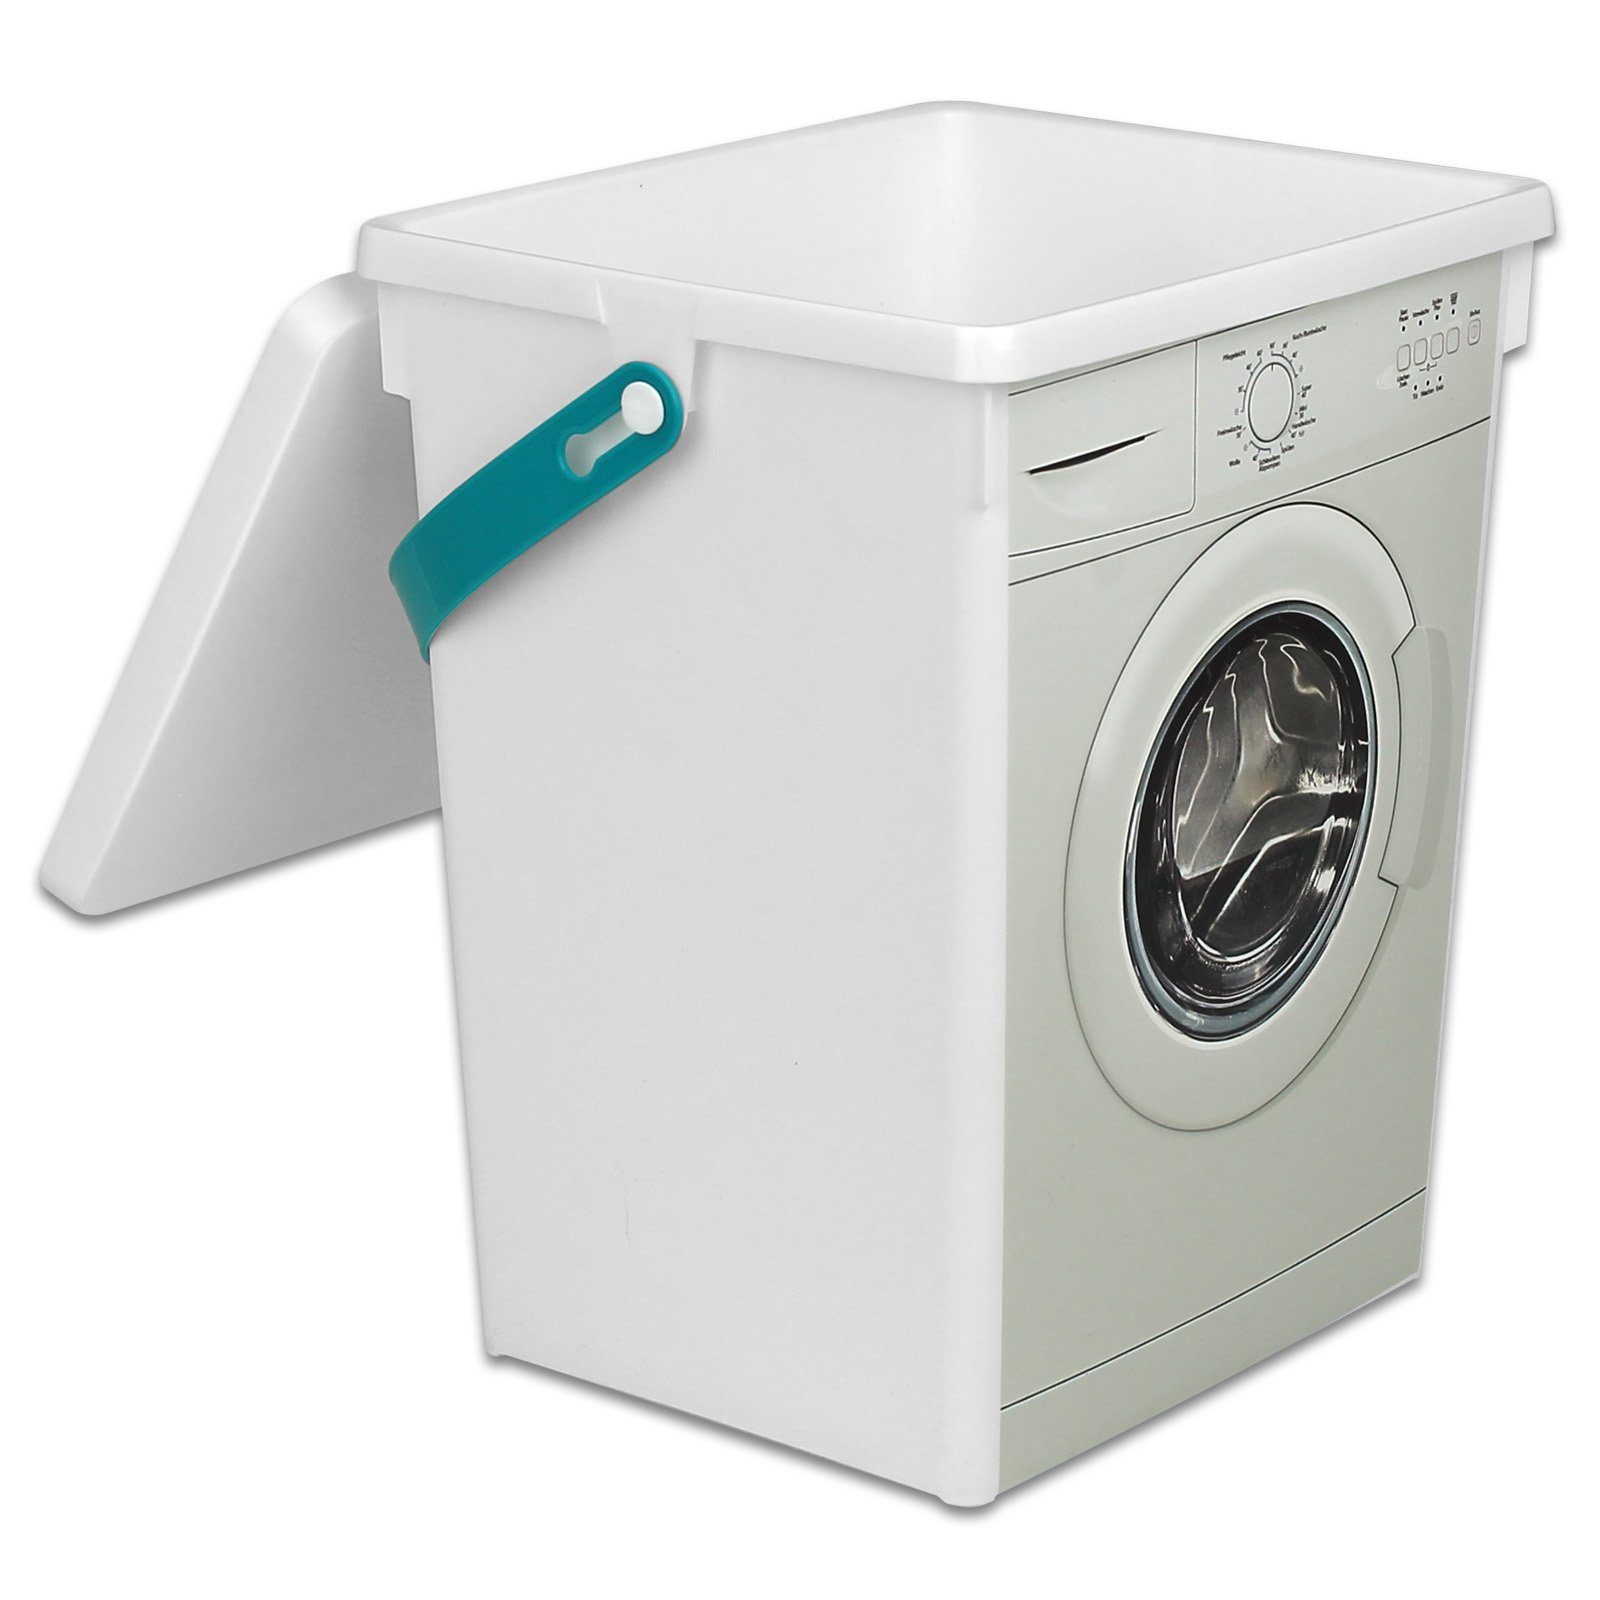 Koopman Aufbewahrungsbox Waschpulver Box 5L Aufbewahrung Kunststoff, Waschmittelbox Waschpulverbehälter Waschmitteldose Wäscheklammerbox